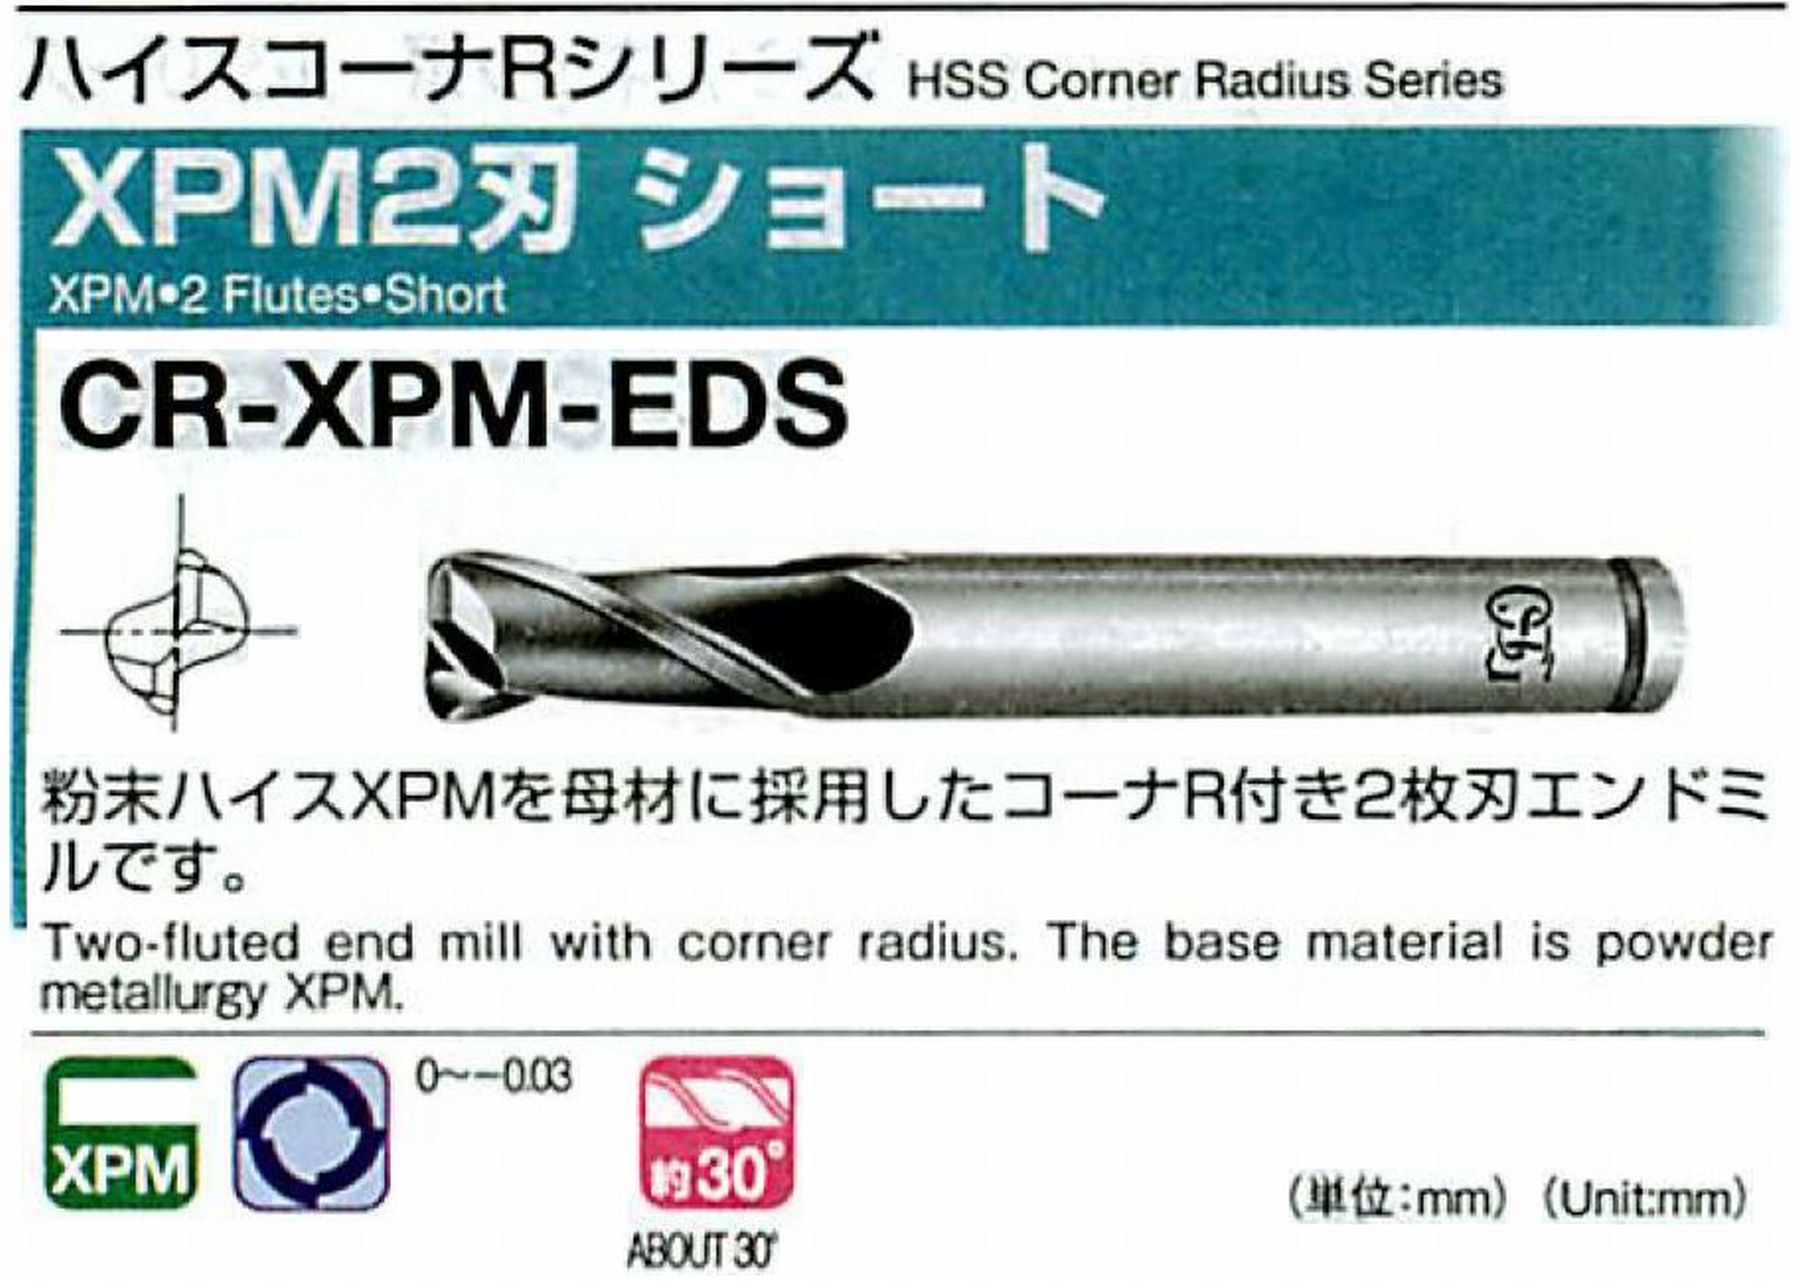 オーエスジー/OSG XPM2刃 ショート CR-XPM-EDS 外径×コーナ半径3×R0.5 全長55 刃長7 シャンク径6mm